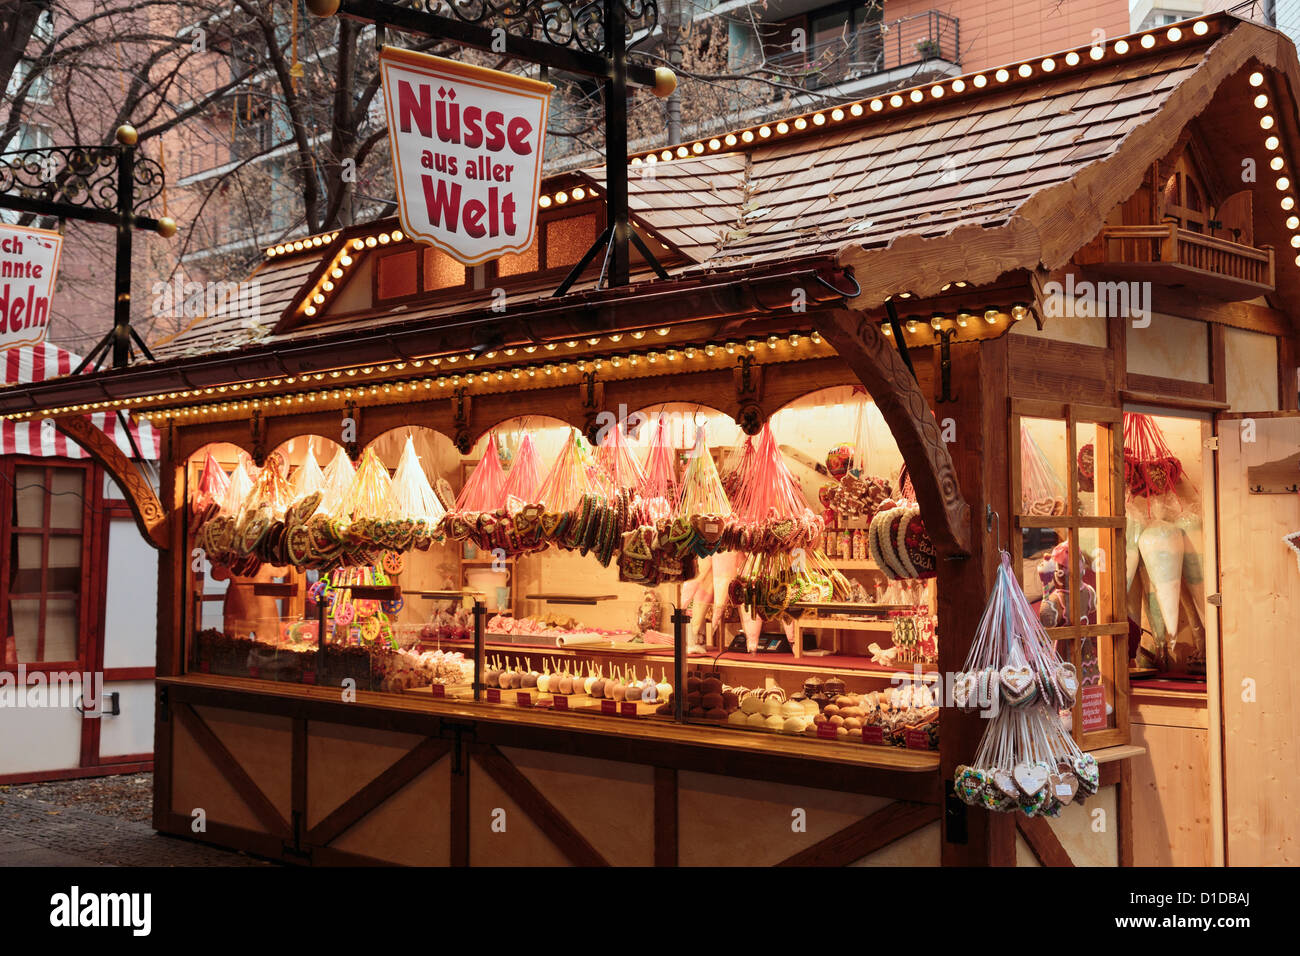 Traditioneller Weihnachtsmarkt hölzernen stall verkauft Süßigkeiten, Schokolade und Bonbons am Potsdamer Platz, Berlin, Deutschland, Europa. Stockfoto